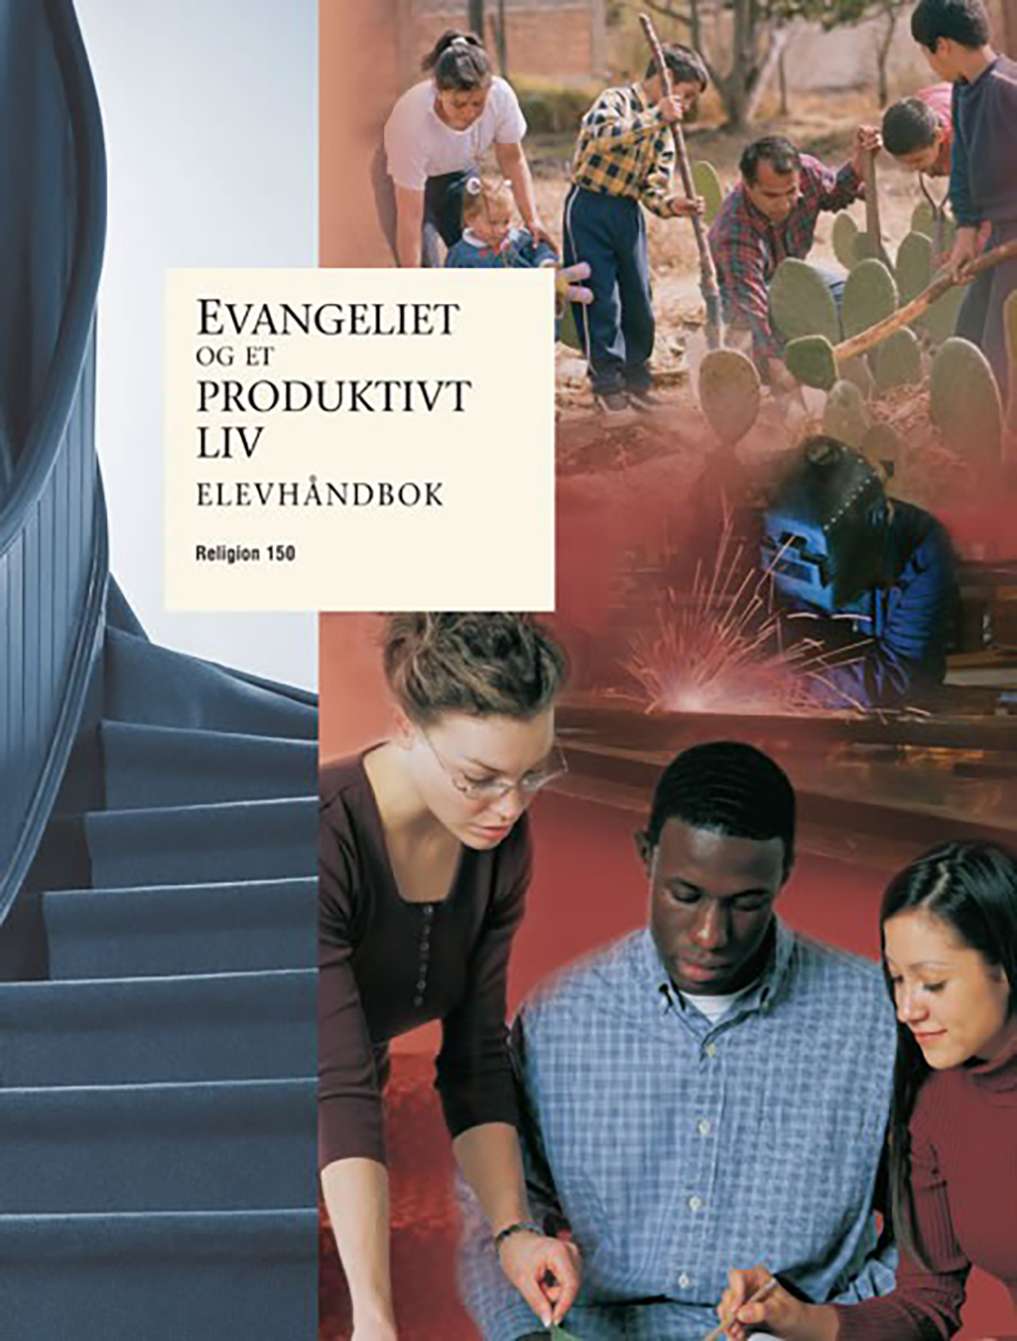 Evangeliet og et produktivt liv – Elevhåndbok (Religion 150)